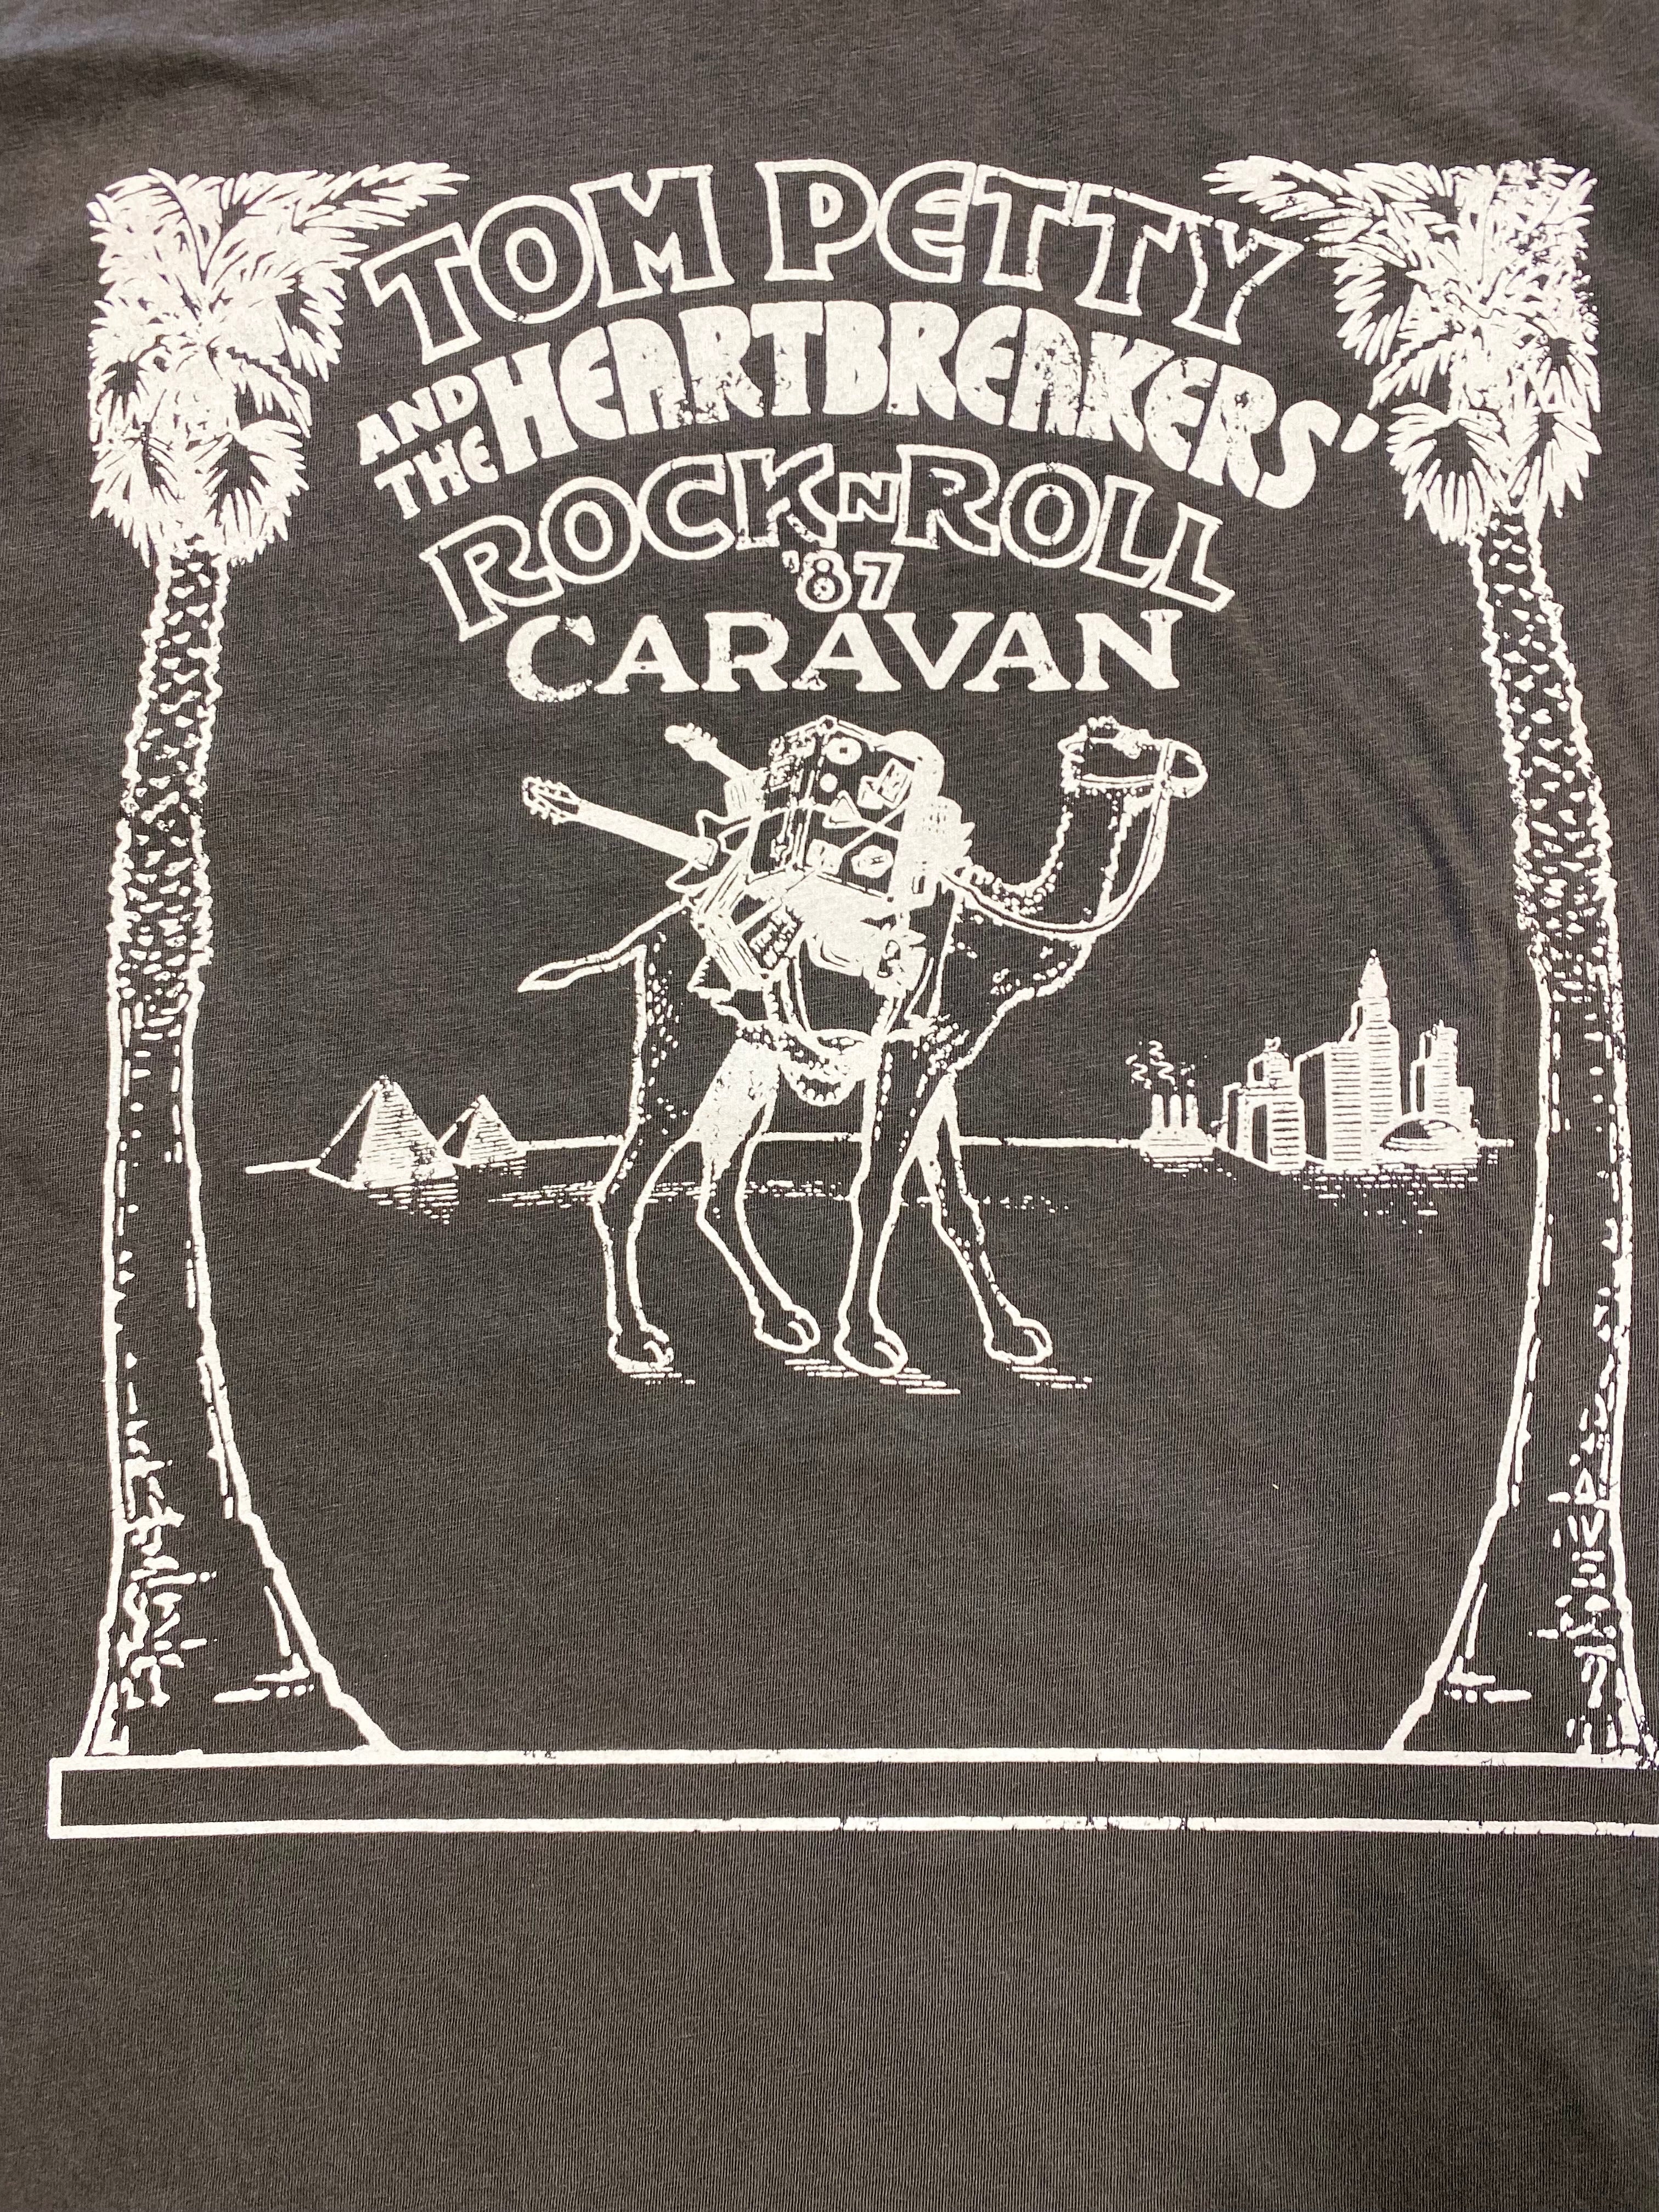 Tom Petty and the Heartbreakers' Rock n' Roll Caravan Muscle Tee